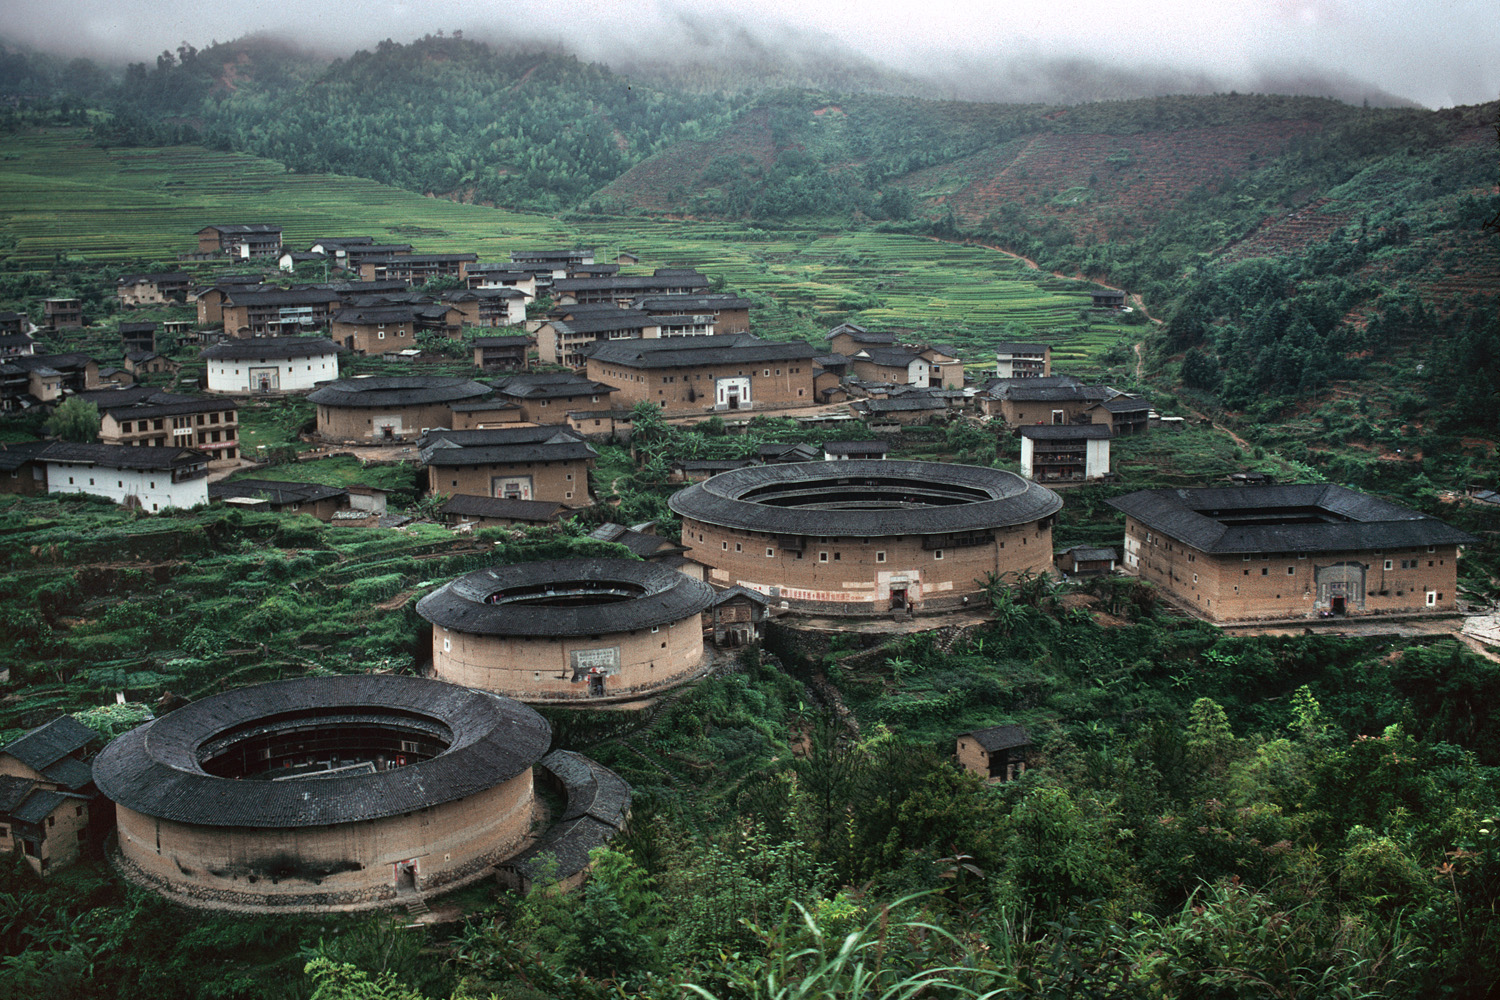 bill-hocker-xiayang-village-fujian-province-china-2002